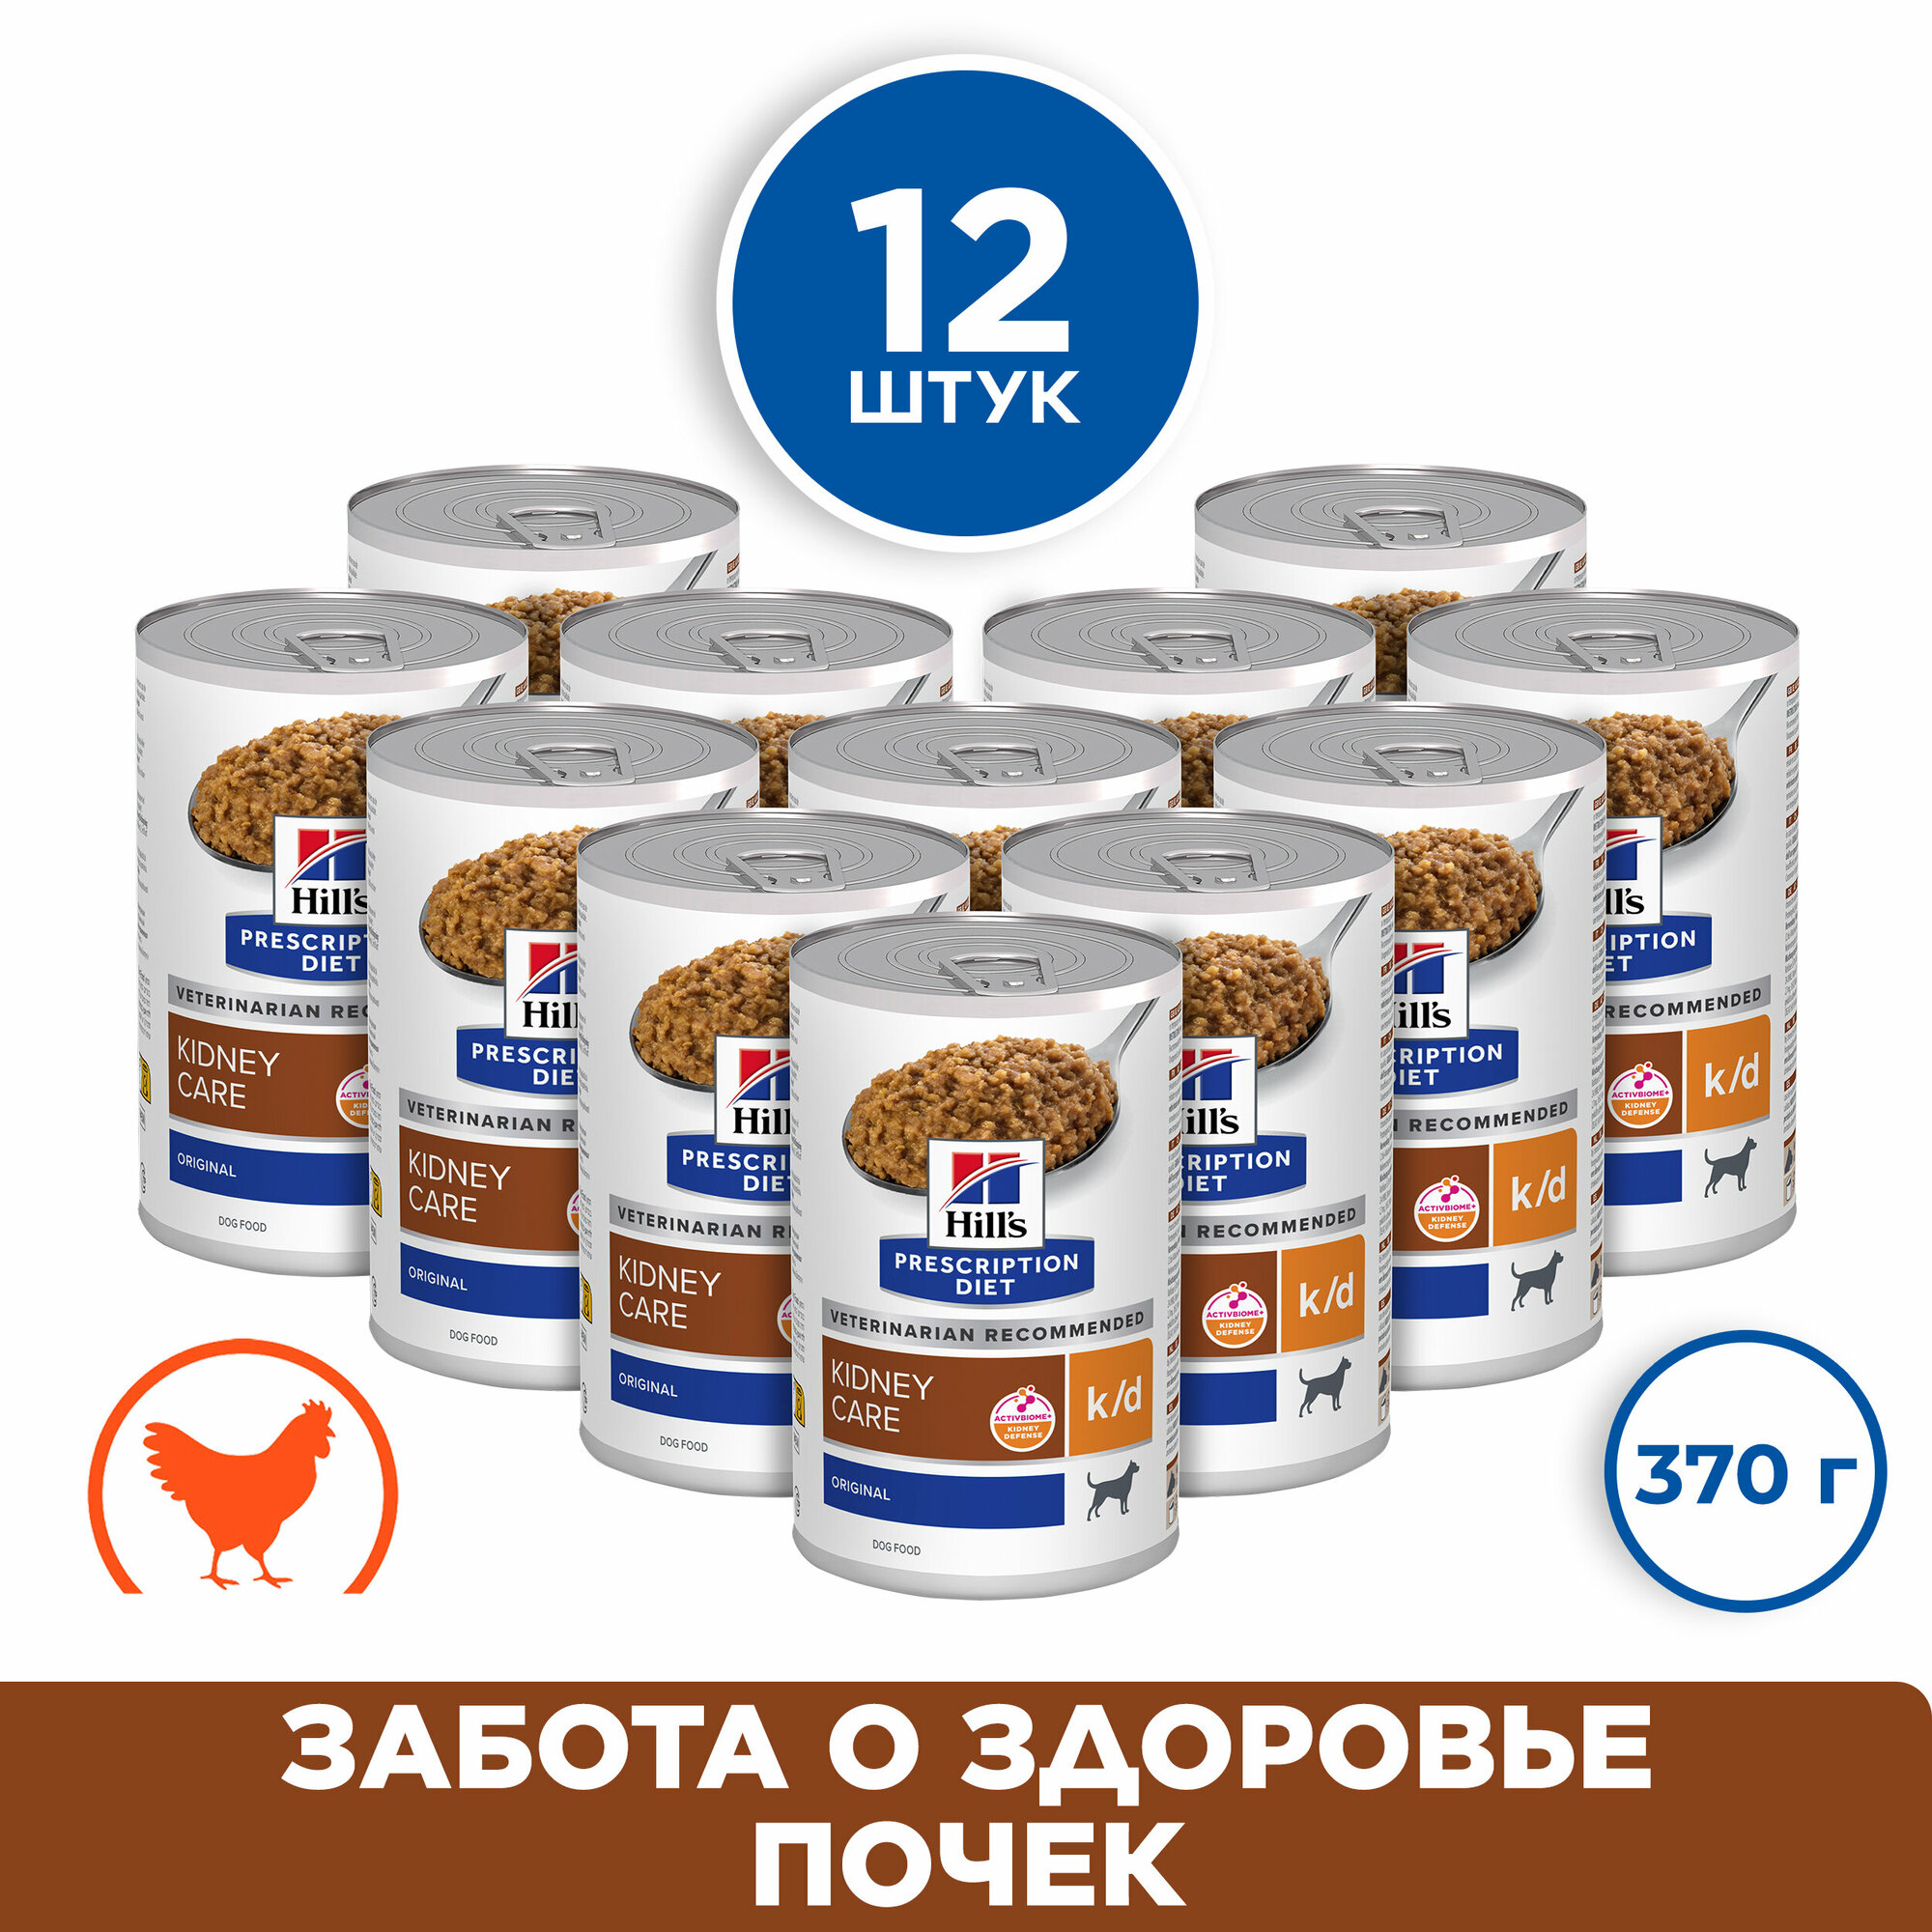 Hill's Prescription Diet k/d Kidney Care консервы для собак диета для поддержания здоровья почек Курица, 370 г. упаковка 12 шт